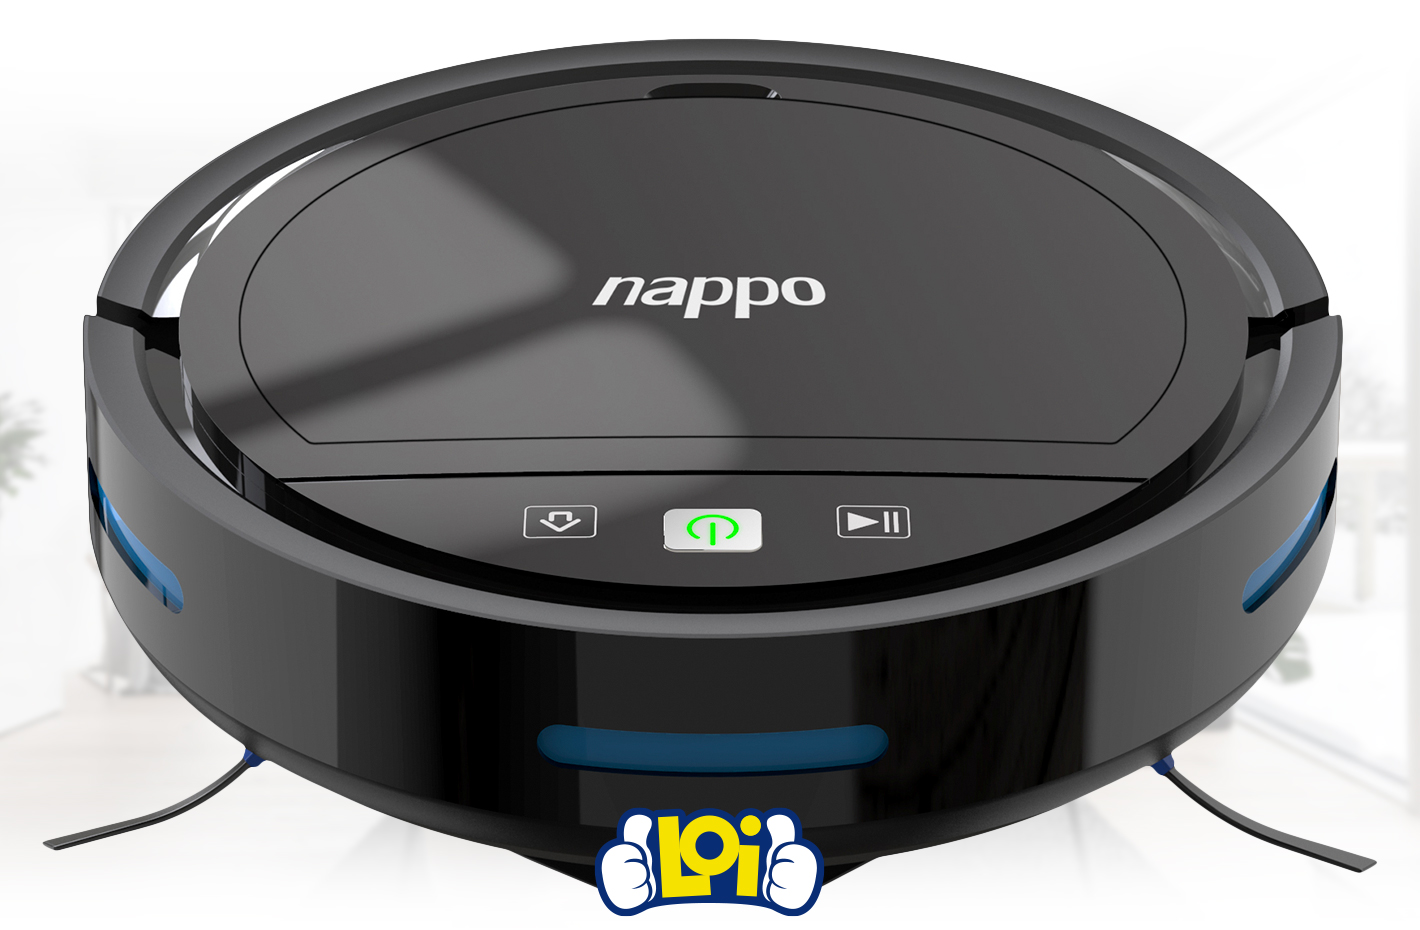 Aspiradora Robot NAPPO con 3 Modos de Limpieza Inteligente Sensores  Anticaída y Mopa Removible, oferta LOi.